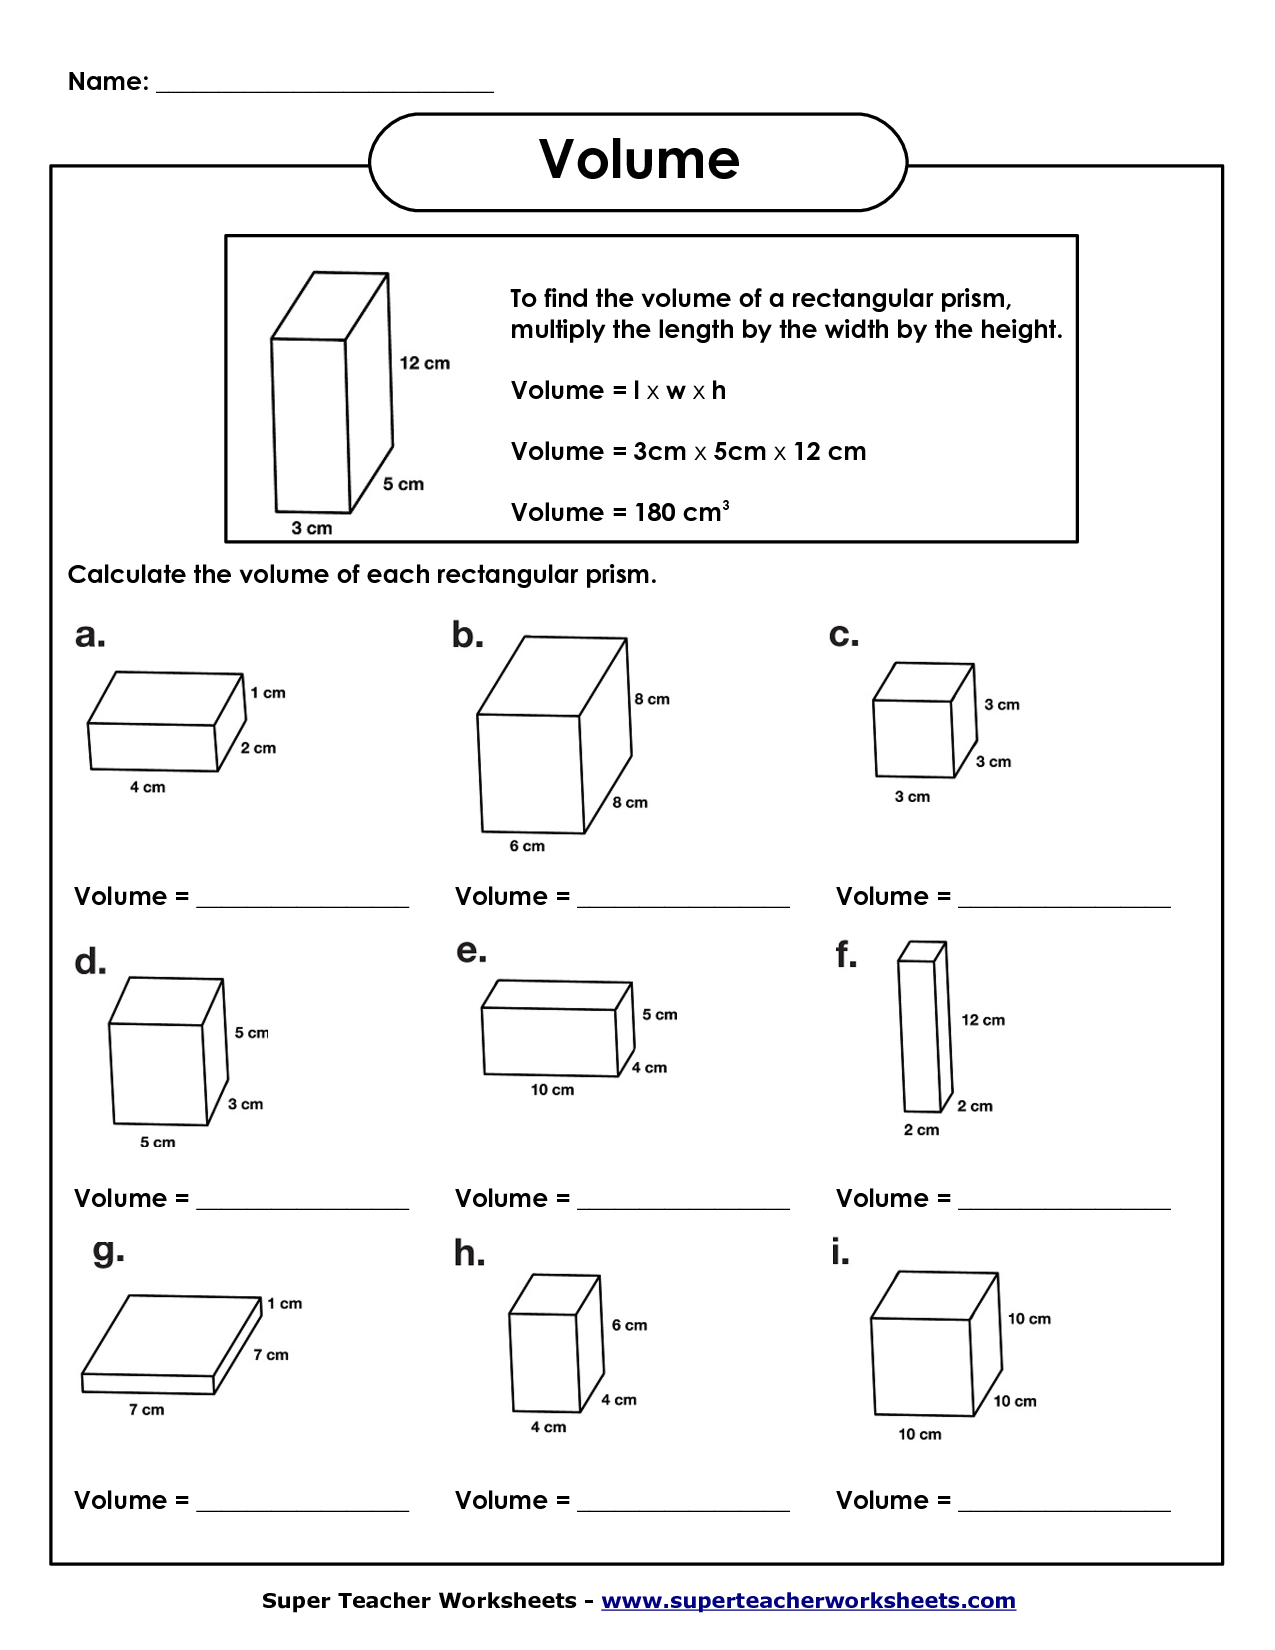 Rectangular Prism Volume Worksheet Image